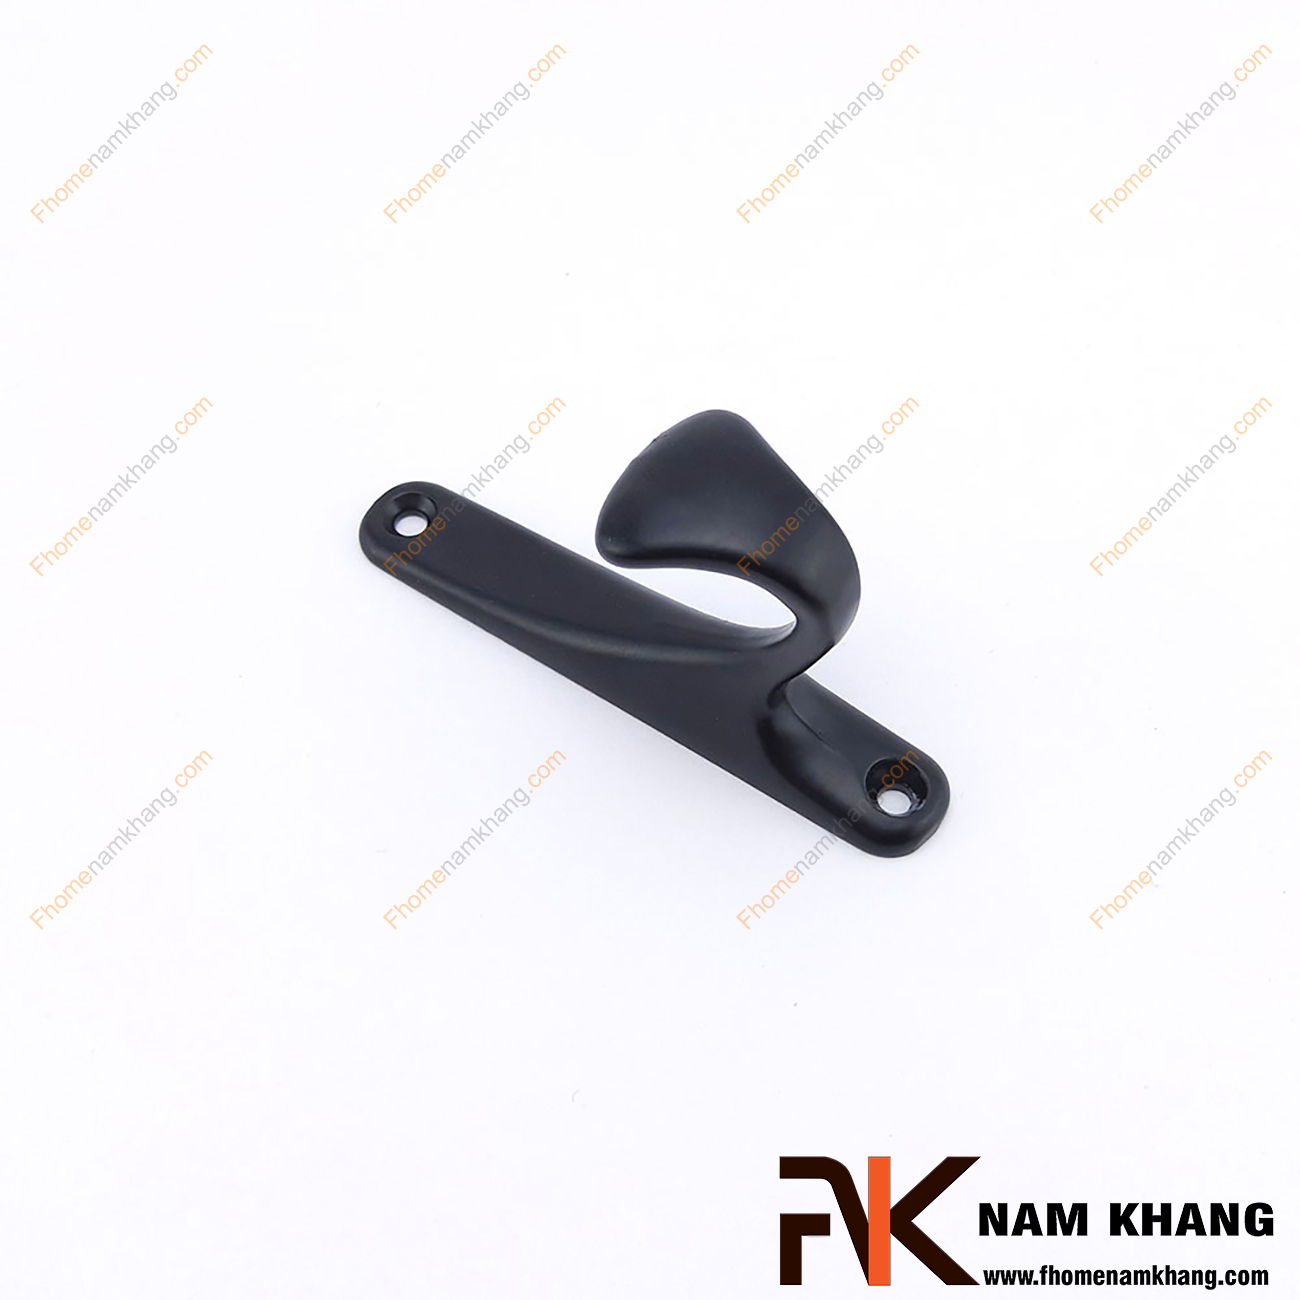 Móc treo tường màu đen NK121-D2- là một sản phẩm phụ kiện được chế tạo từ chất liệu cao cấp.